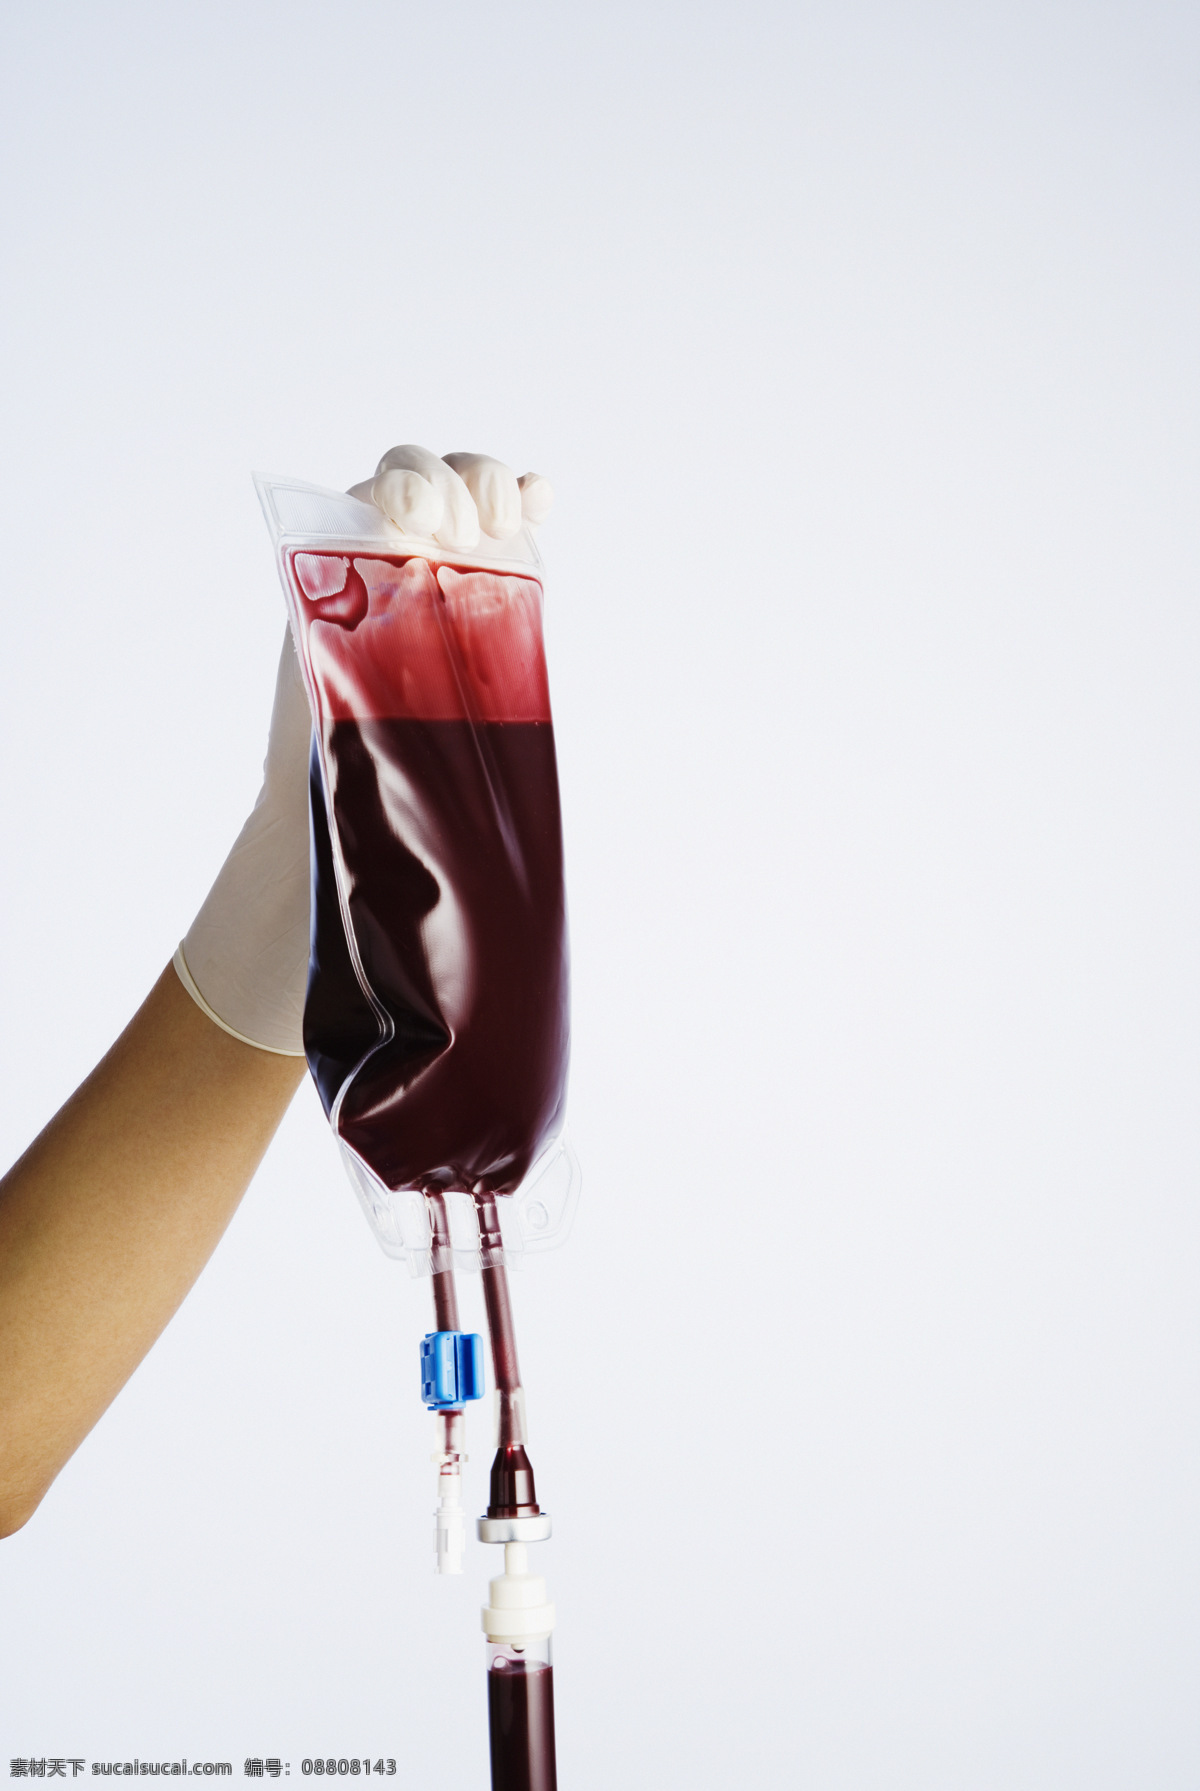 手中 提 血袋 手 提着 血液 医疗 健康 医疗护理 现代科技